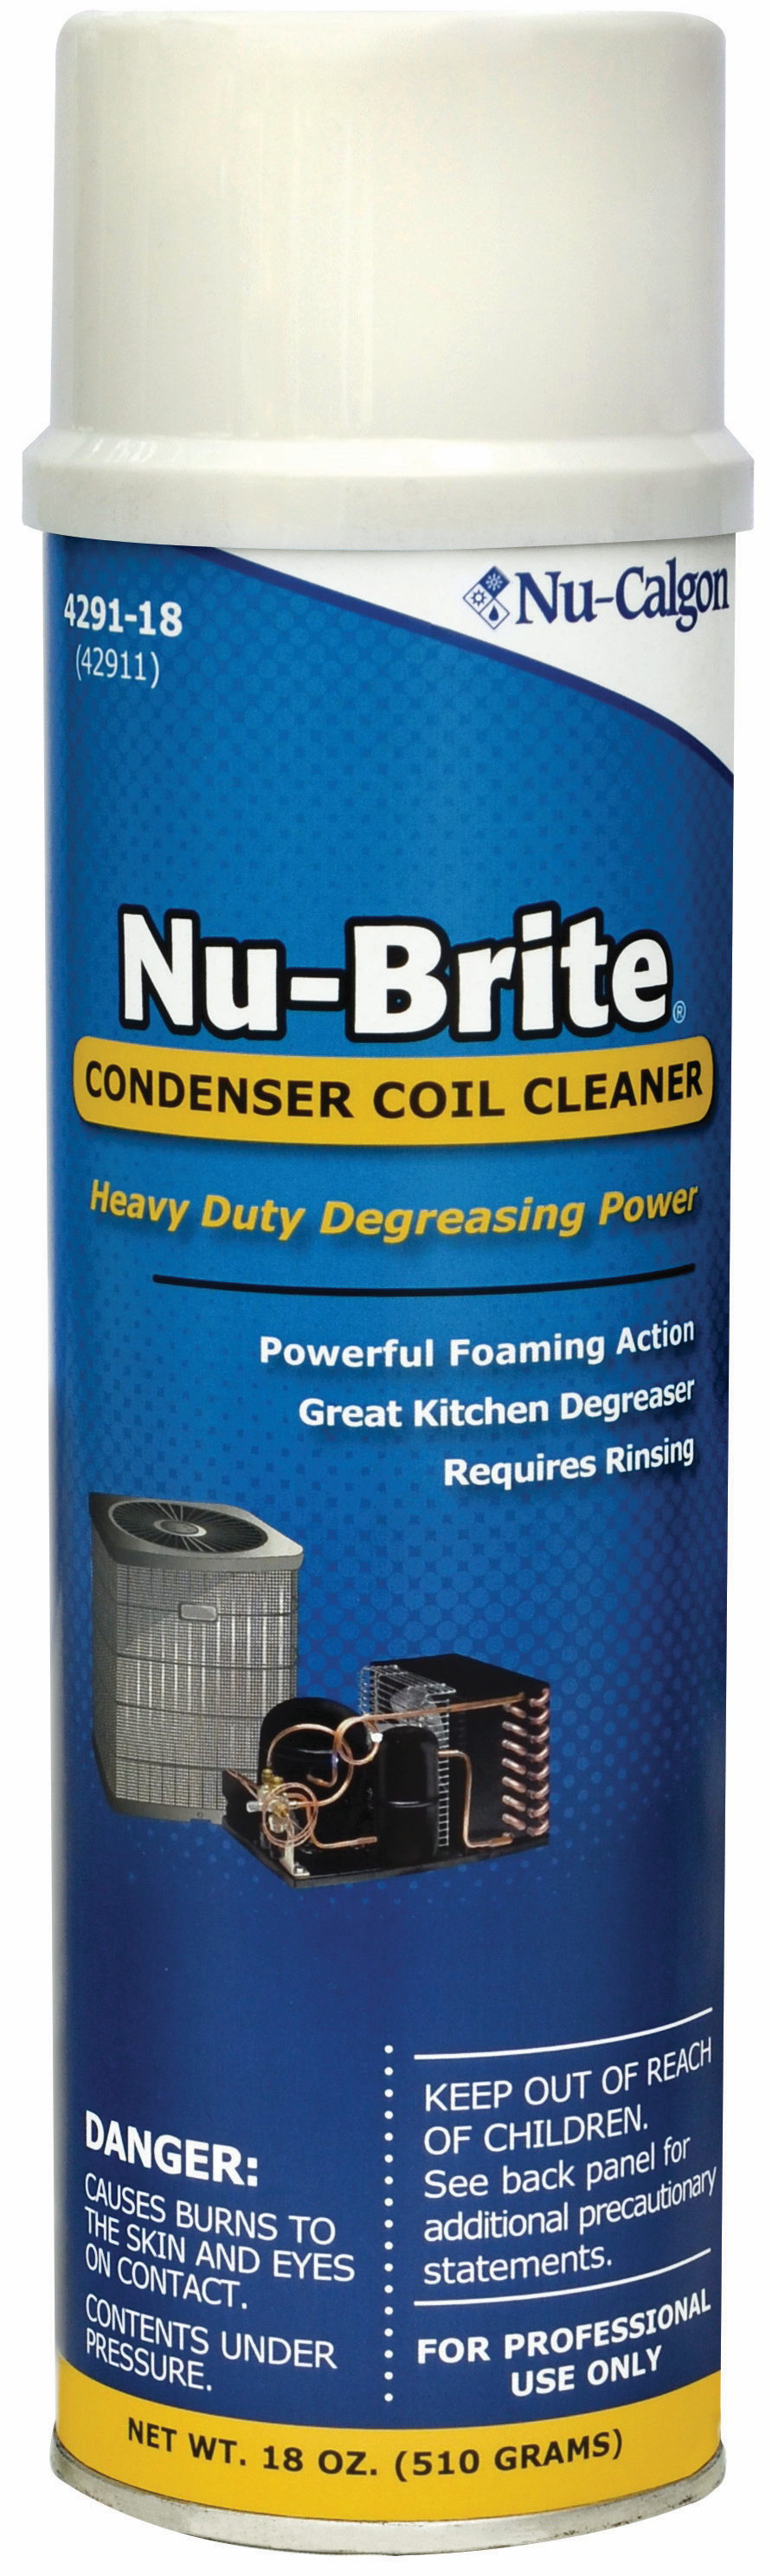 4291-18 NU-BRITE AEROSOL COIL CLEANER - Coil Cleaners